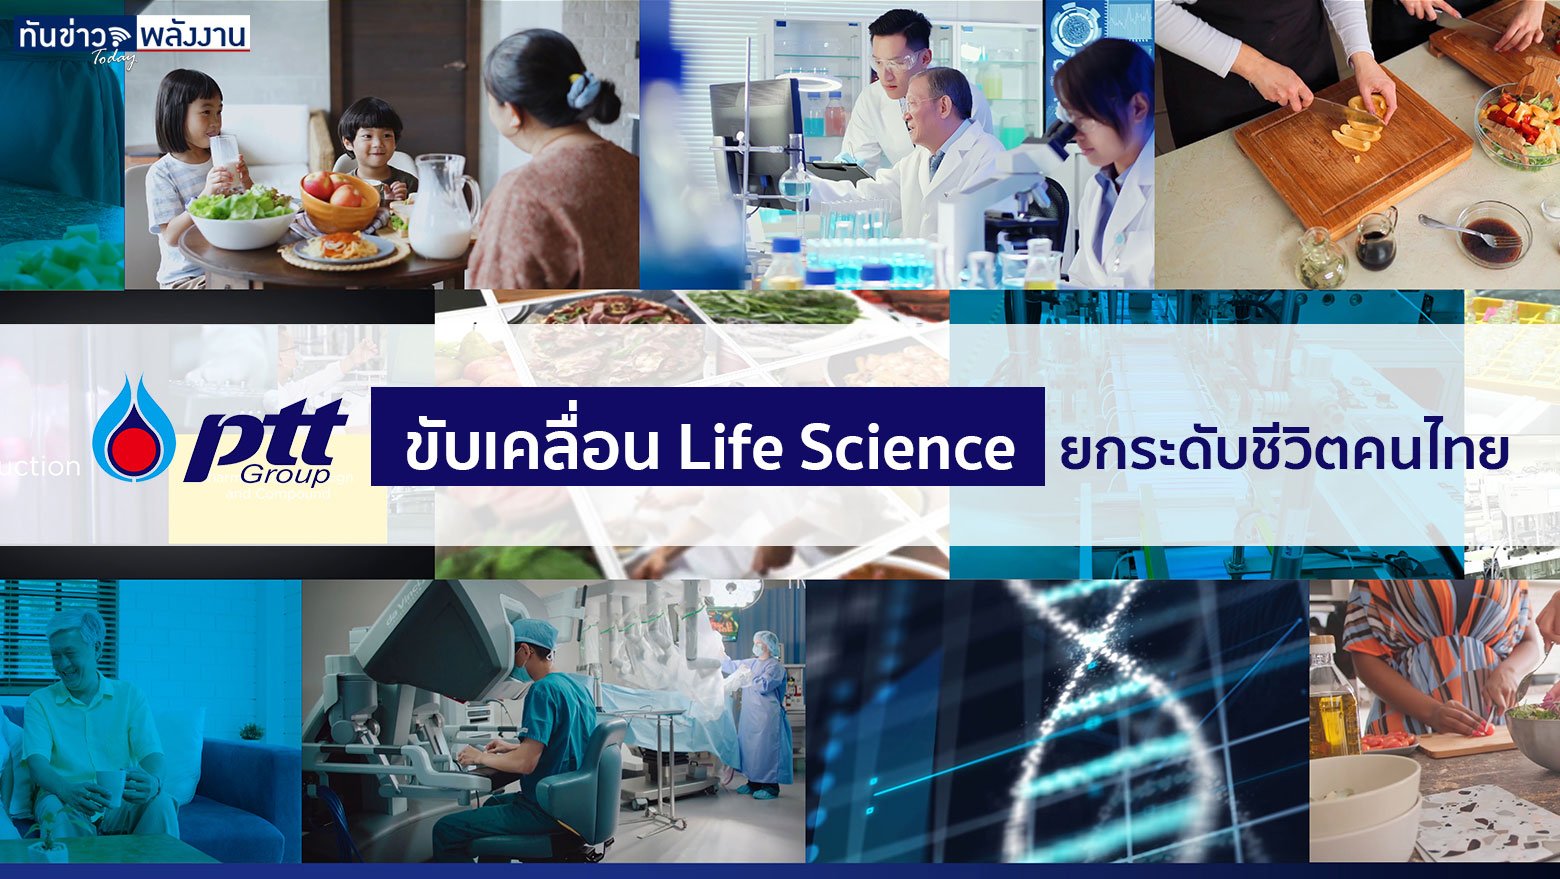 ปตท. ขับเคลื่อน Life Science ยกระดับชีวิตคนไทย